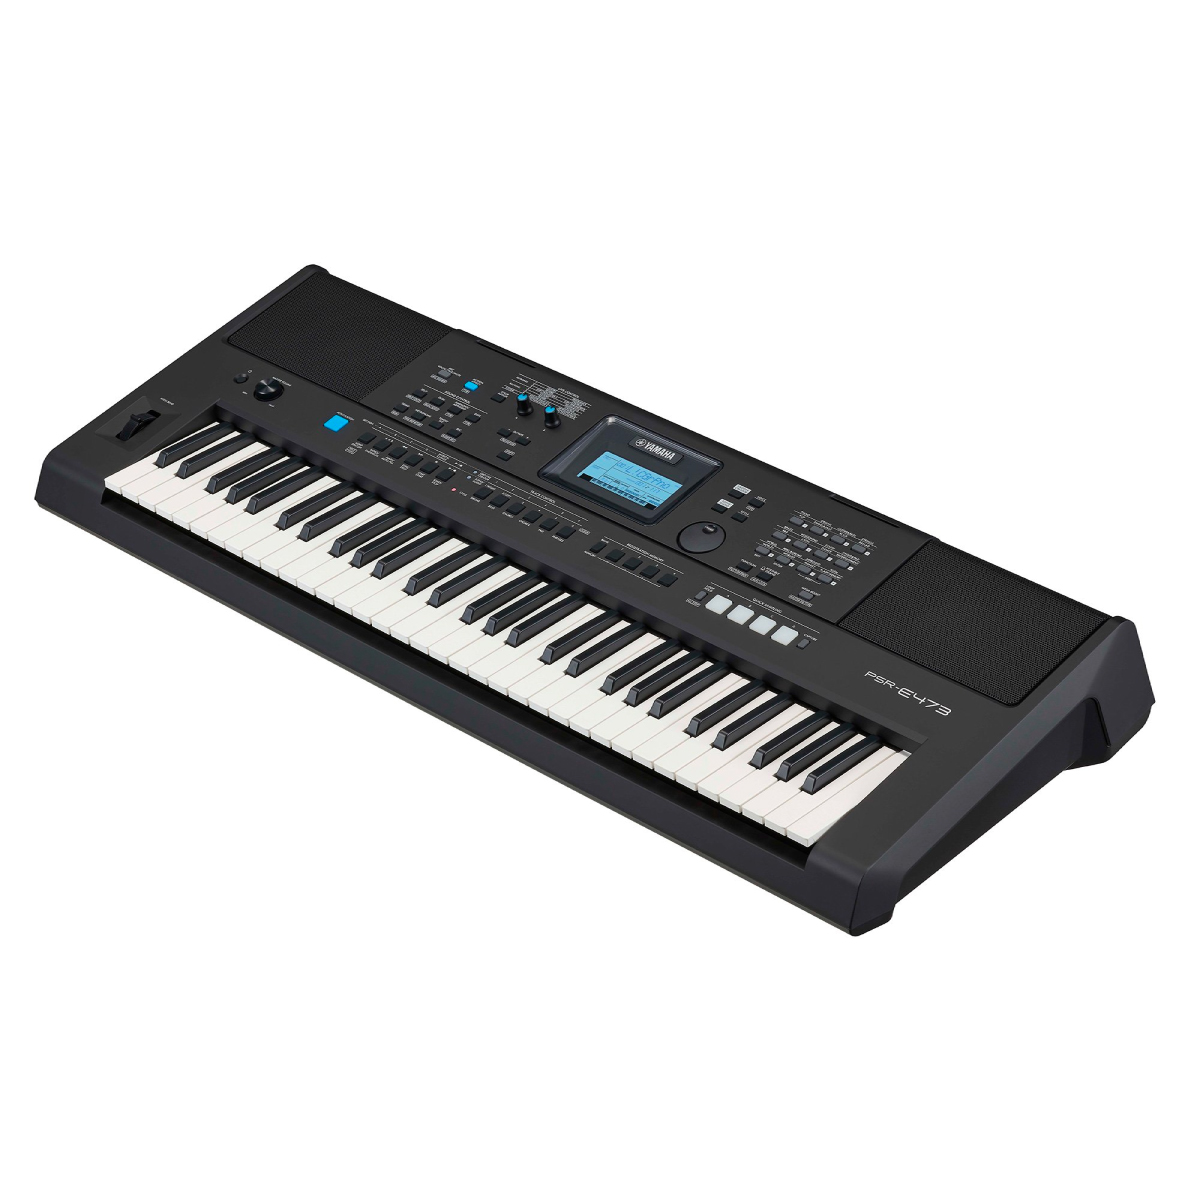 Đàn Organ điện tử, Portable Keyboard - Yamaha PSR-E473 (PSR E473) - Bước tiến cách mạng trong nhạc cụ keyboard di động - Hàng chính hãng